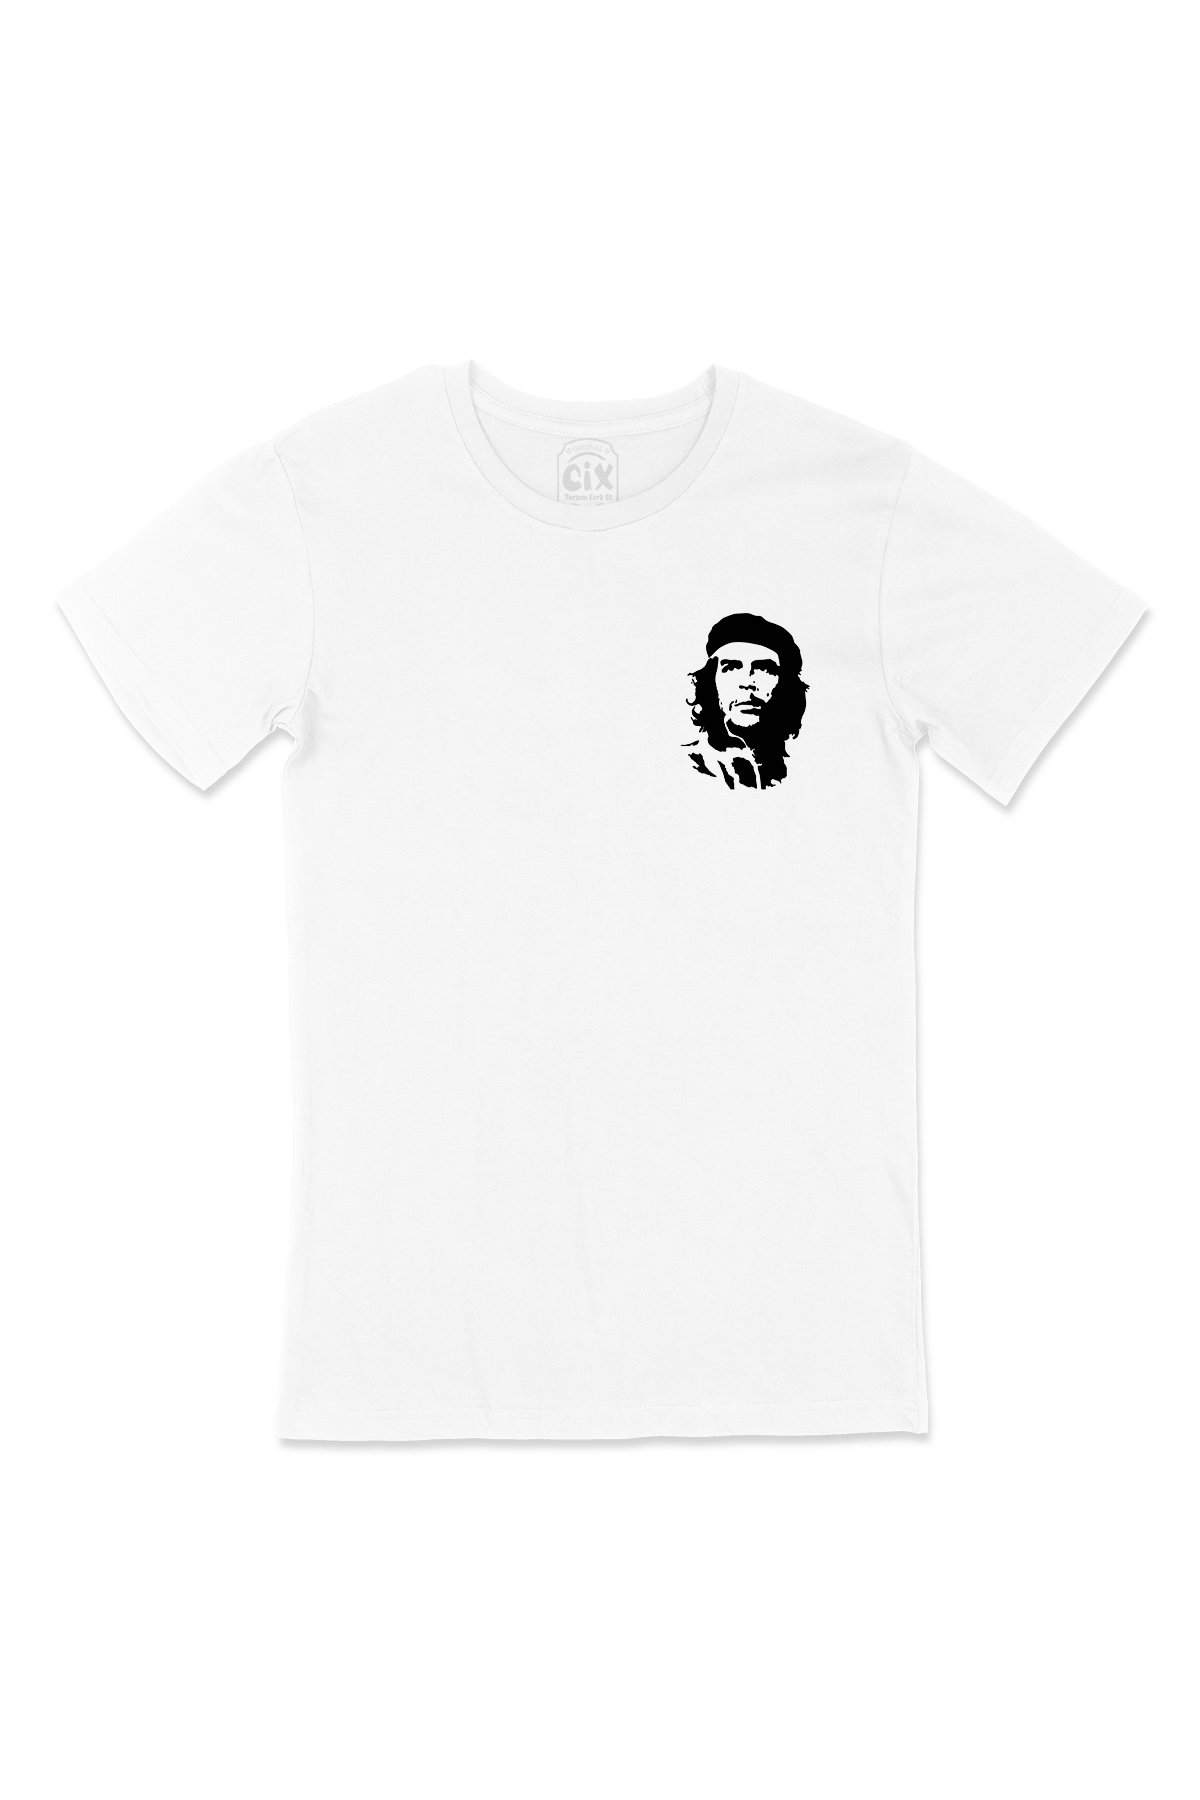 Che Guevara Cep Logo Tasarımlı Beyaz Tişört - Ücretsiz Kargo